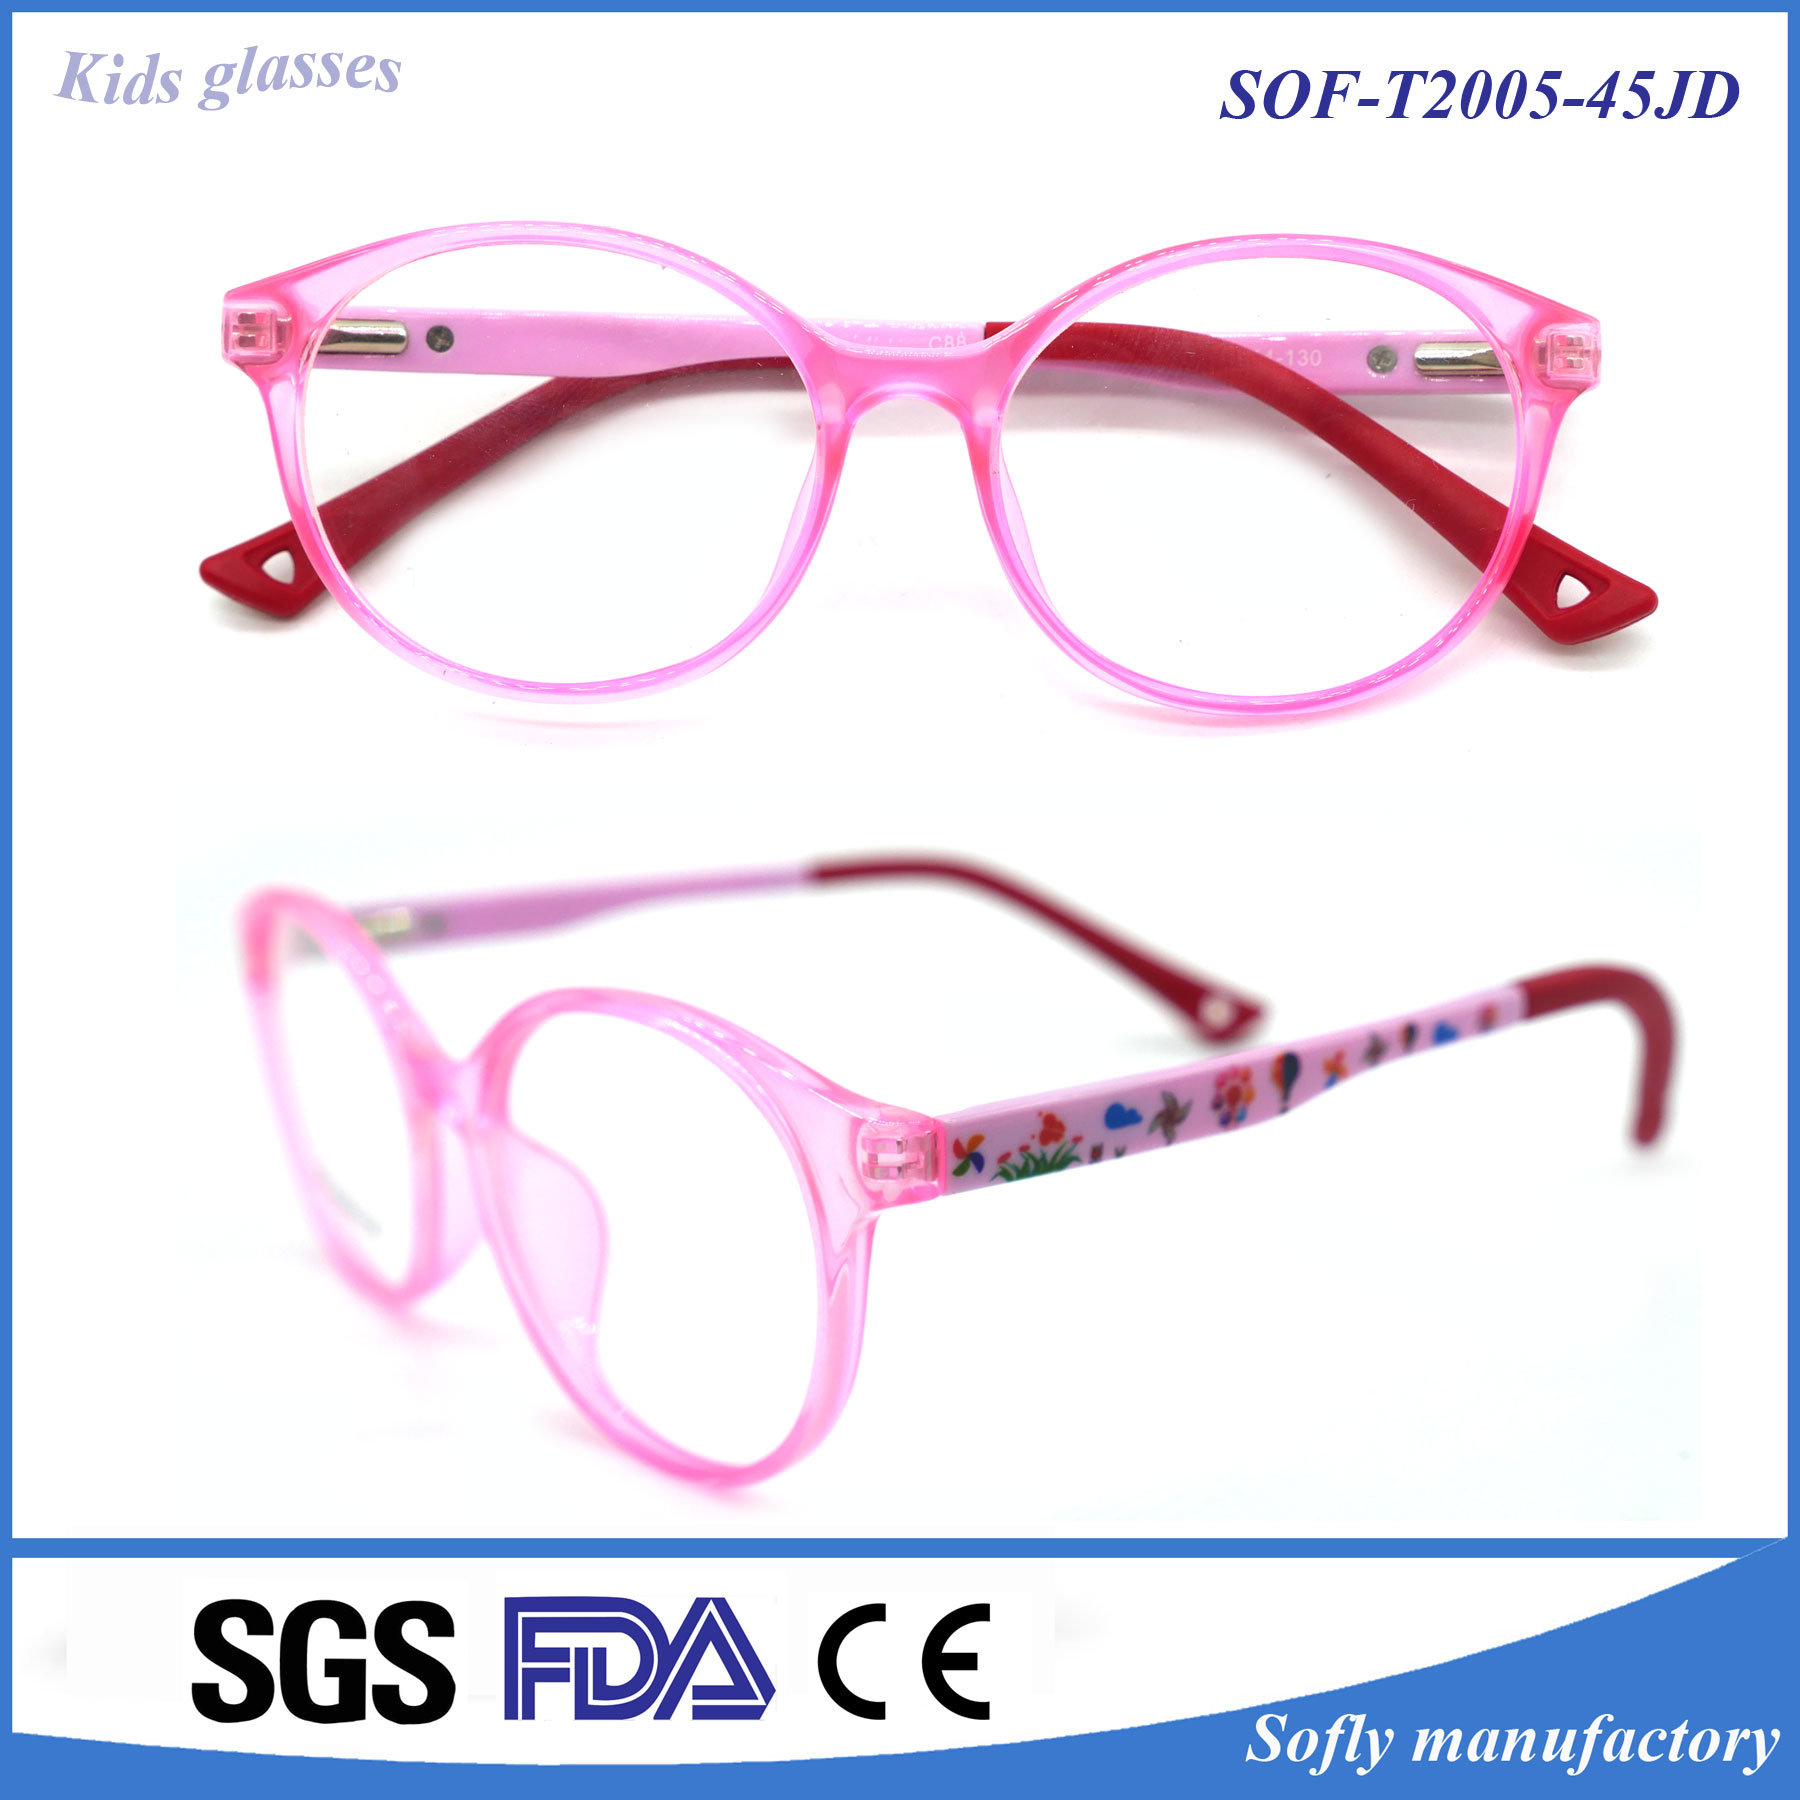 Children's Glasses Frame Tr Popular Material Comfort